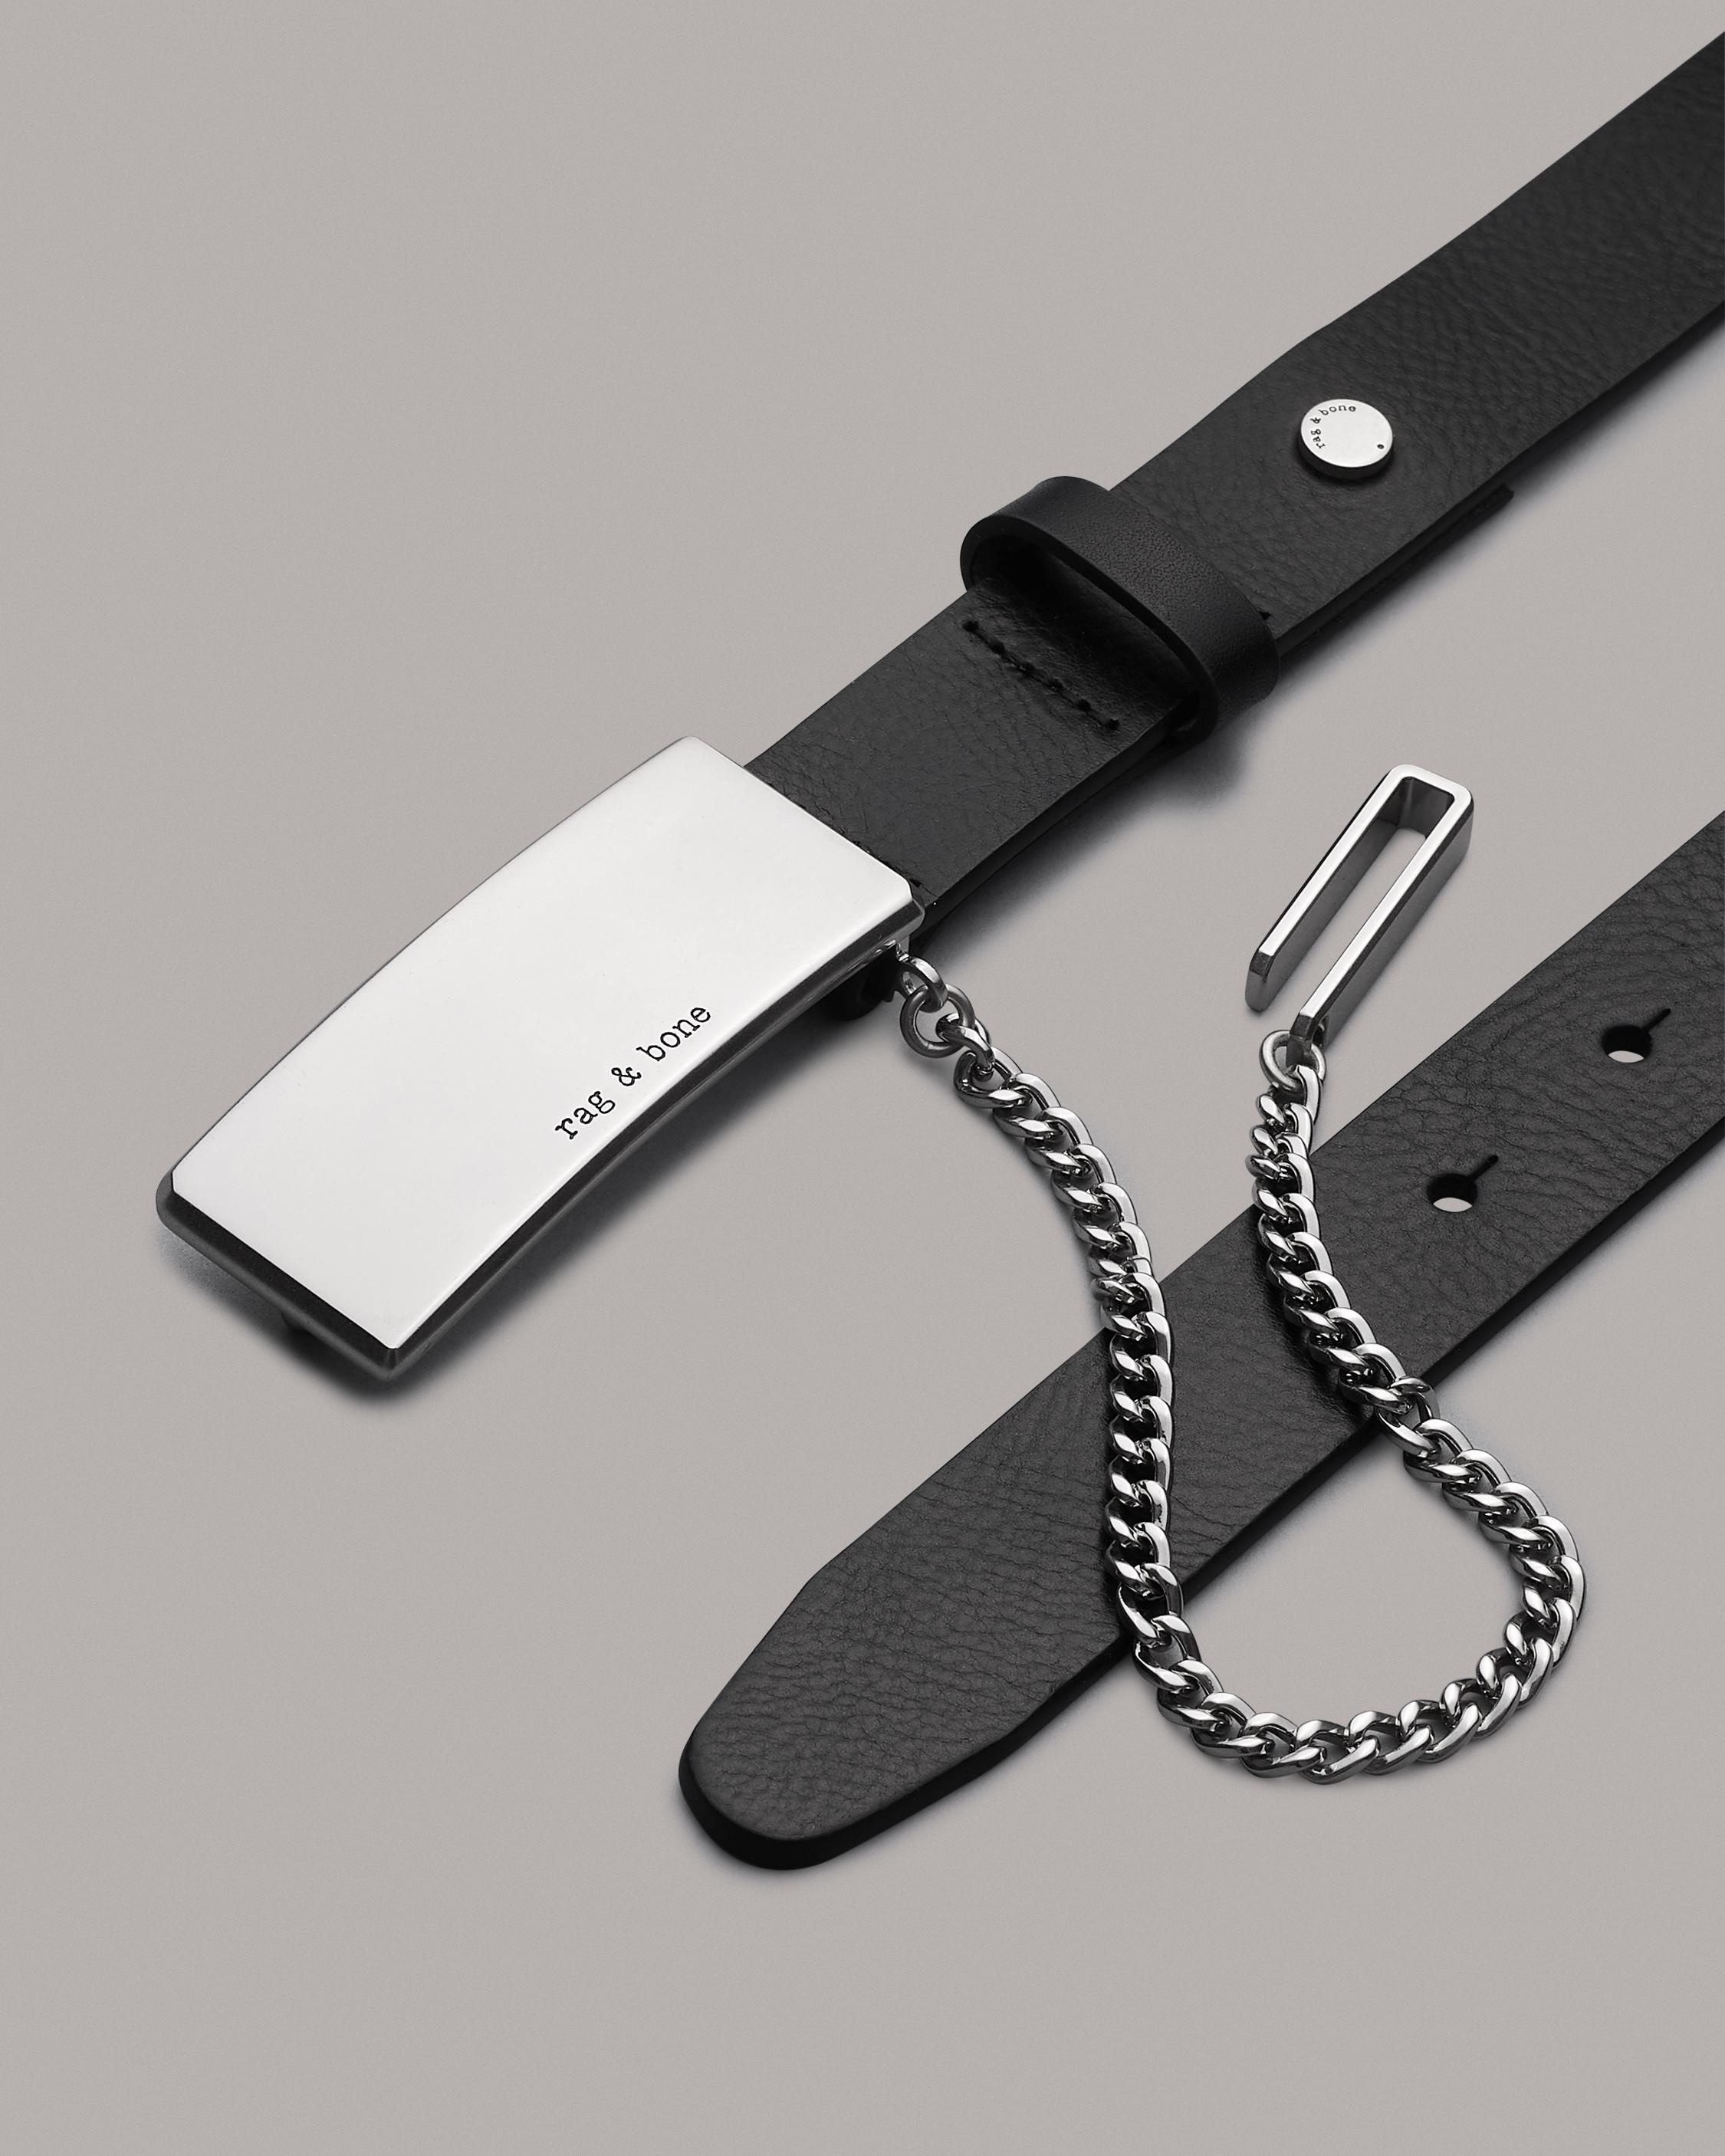 Roni Chain Belt
Leather 25mm Belt - 3